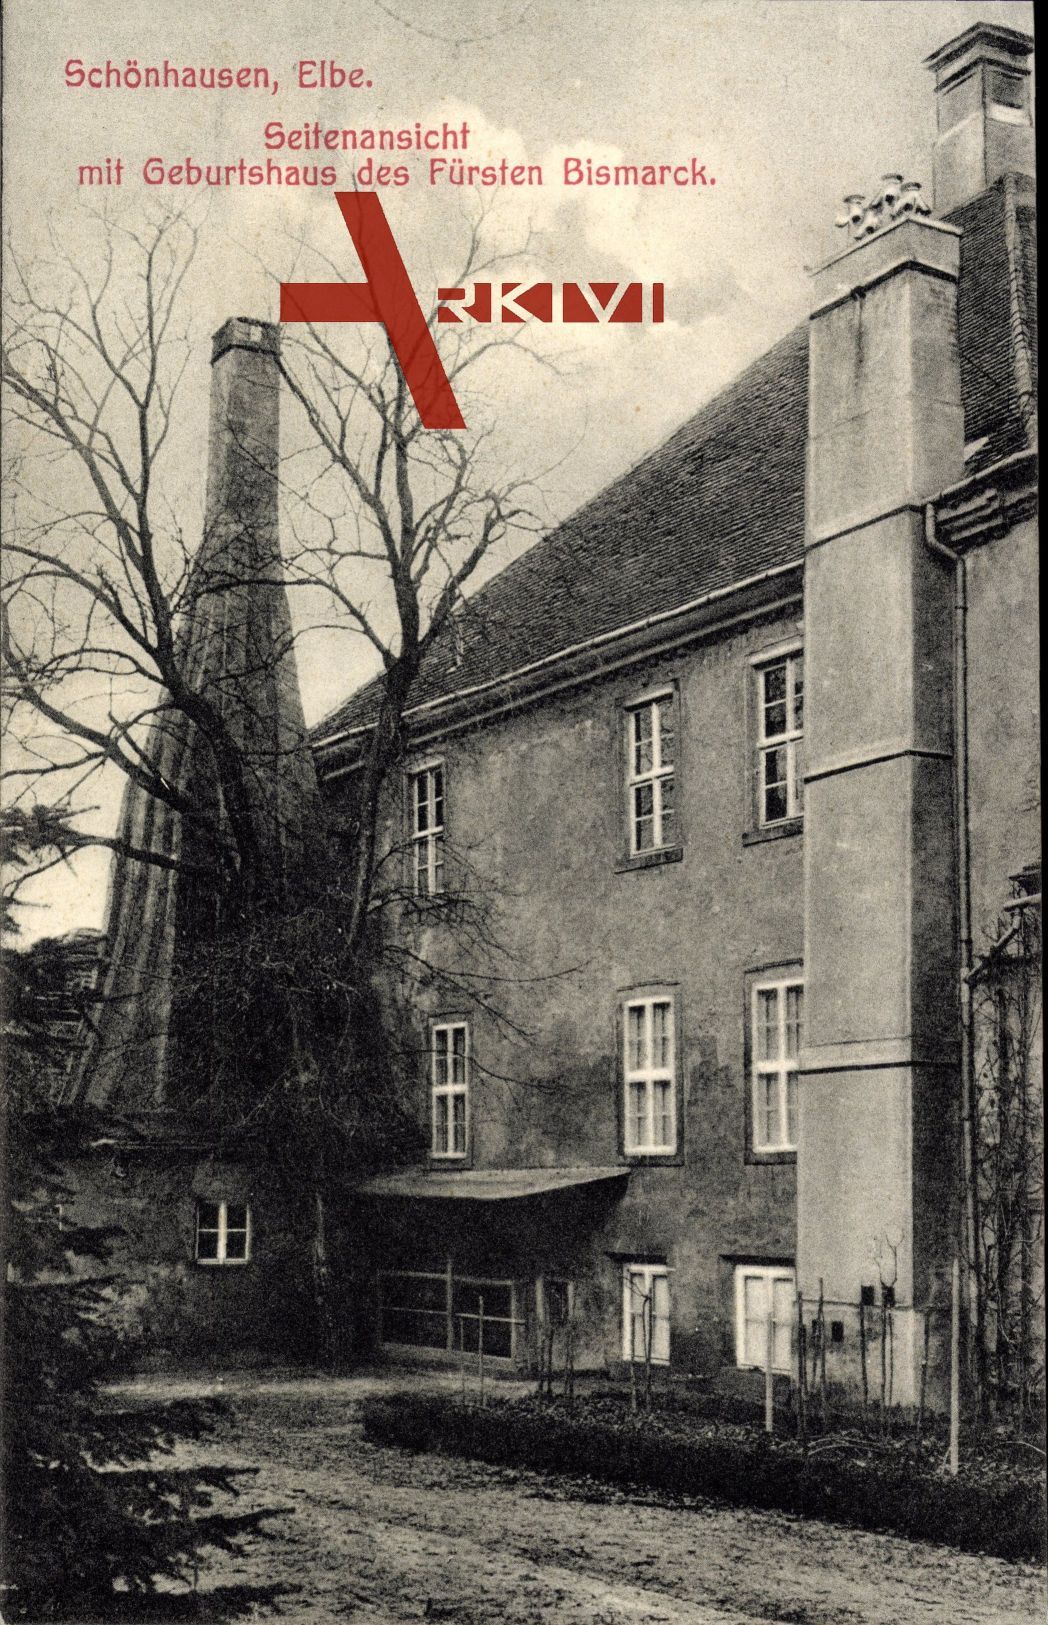 Schönhausen Elbe,Seitenansicht mit Geburtshaus des Fürsten Bismarck